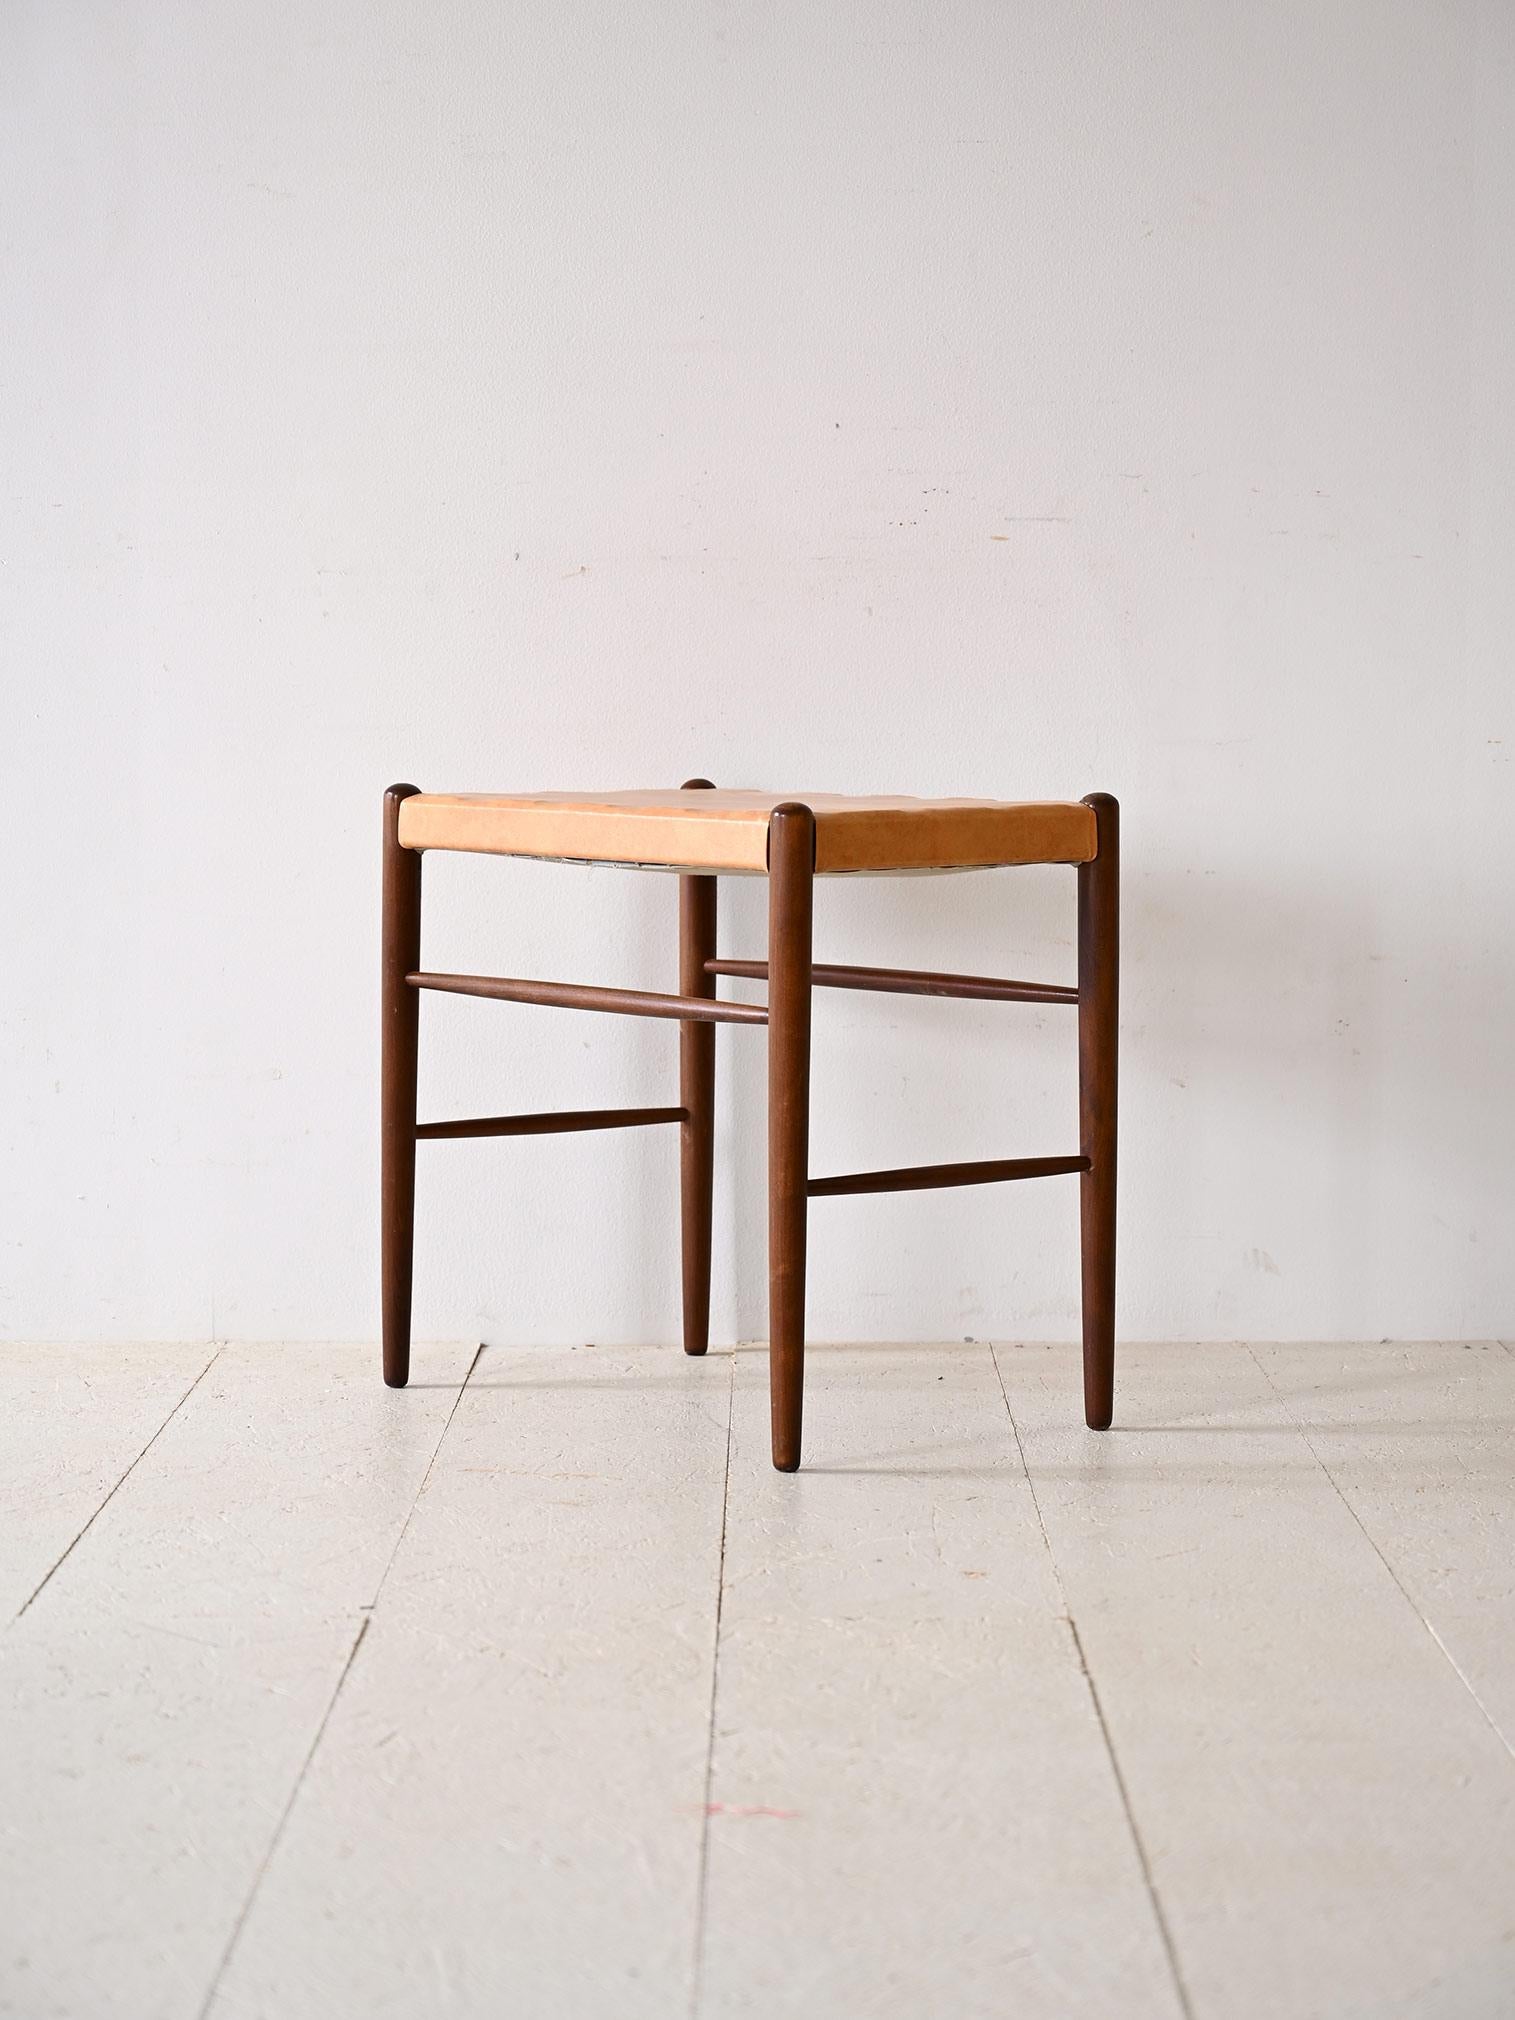 Original 1960er Jahre skandinavischer Hocker.

Ein Möbelstück im klassischen Geschmack, bestehend aus einem Holzrahmen mit langen konischen Beinen und einem beigen Kunstledersitz.
Es kann in verschiedenen Zimmern des Hauses verwendet werden, um dem